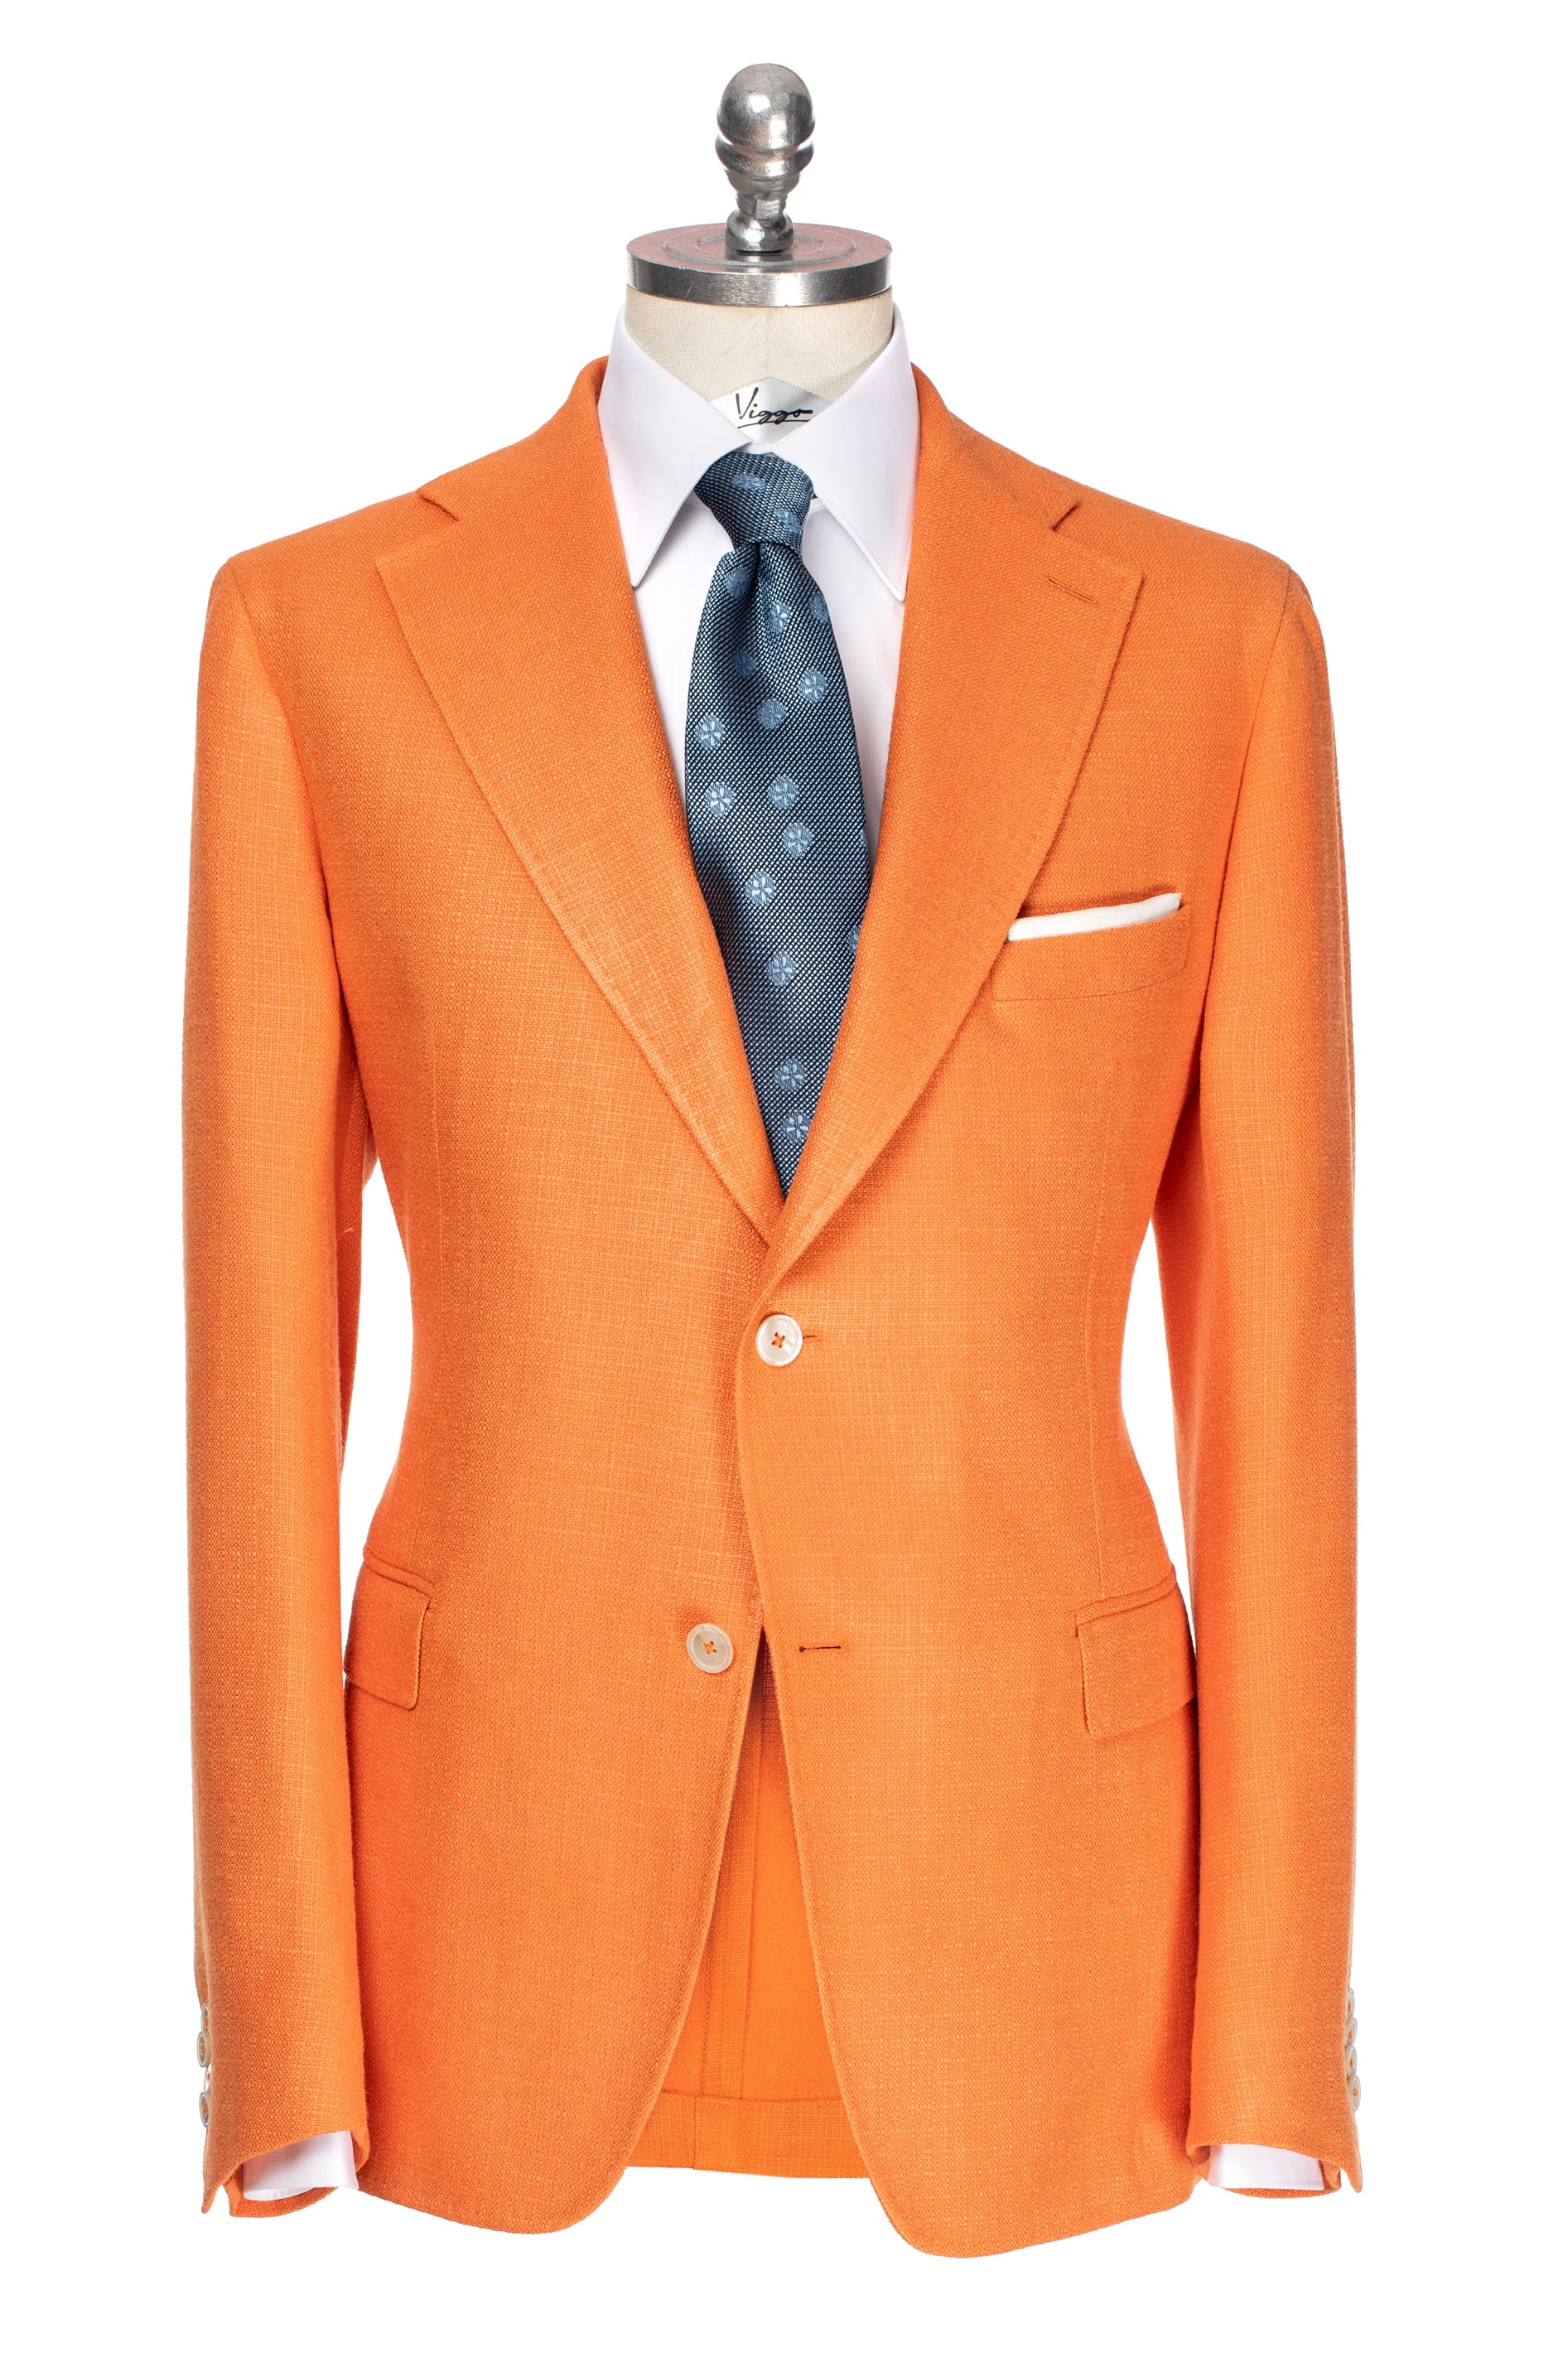 Giacca arancione realizzata in seta naturale, vestibilità slim